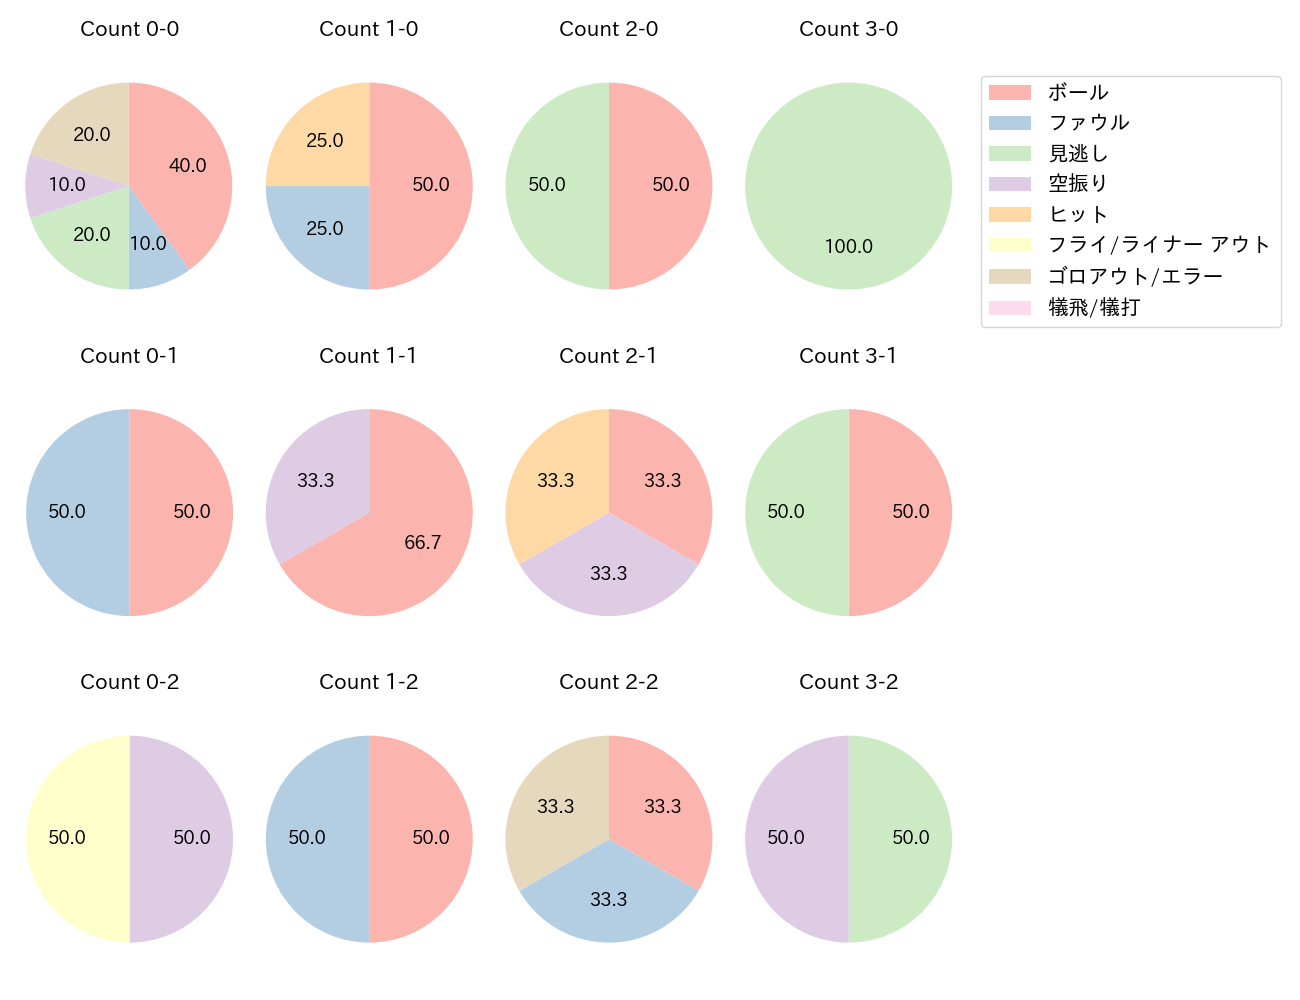 加藤 翔平の球数分布(2021年6月)